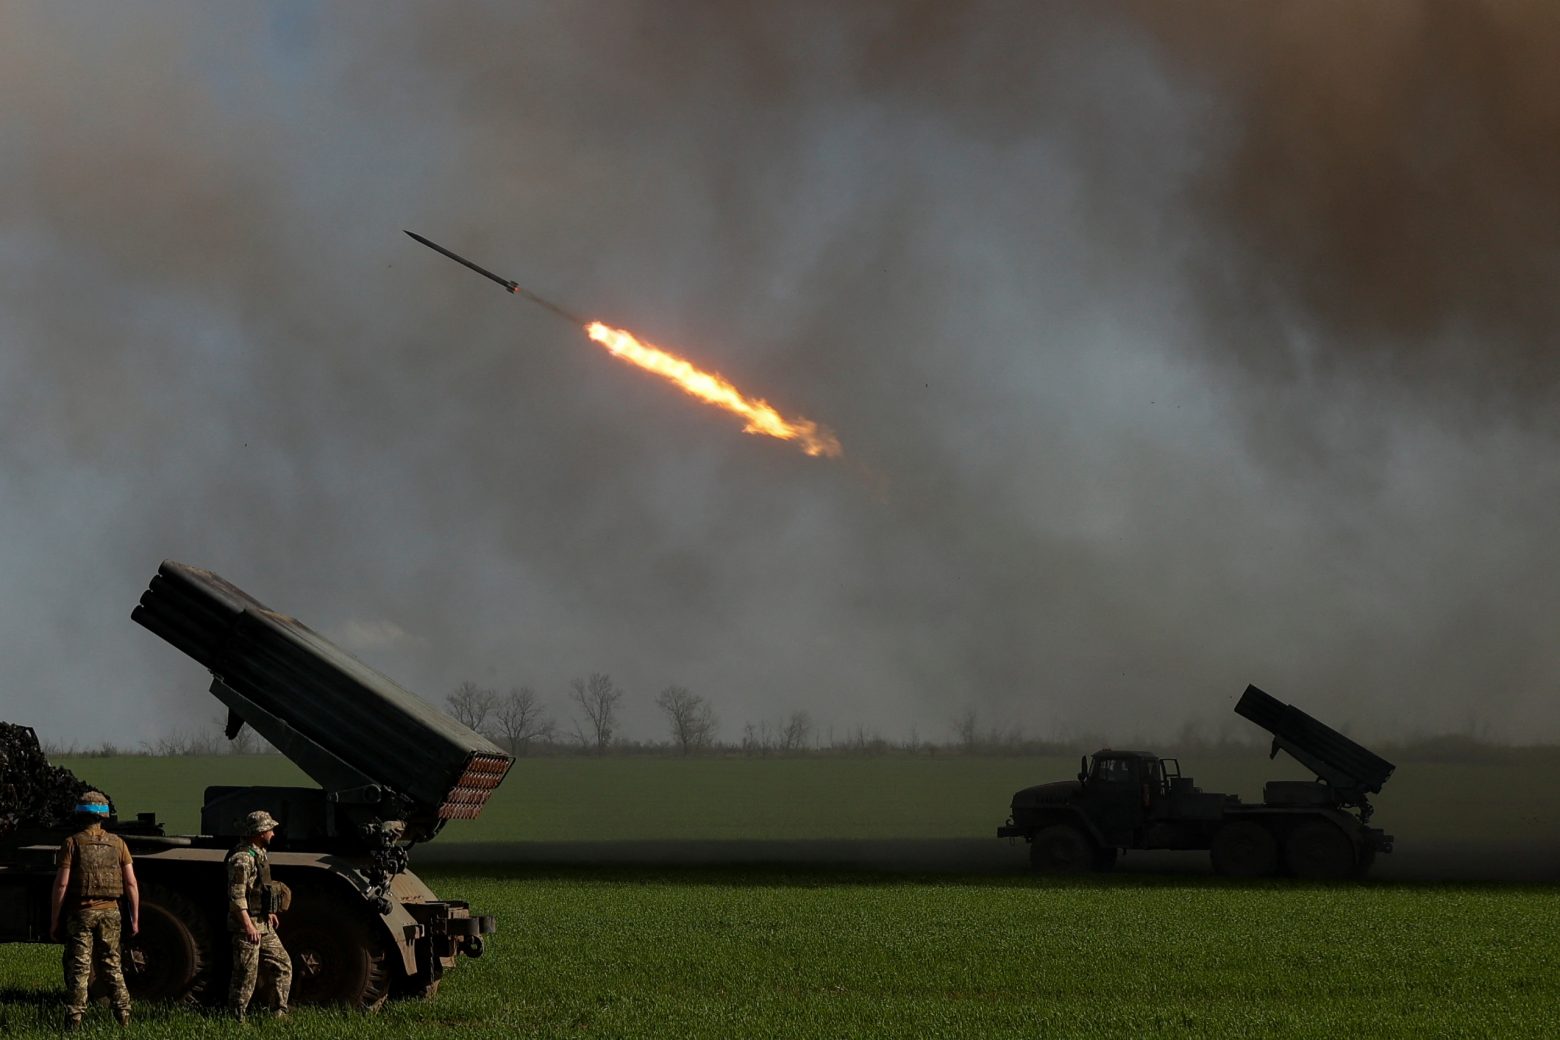 Πόλεμος στην Ουκρανία: Ξεκινά η μετάβαση στα νατοϊκά όπλα - Για αποστολή αεροπλάνων και τανκς πιέζει η Βρετανία